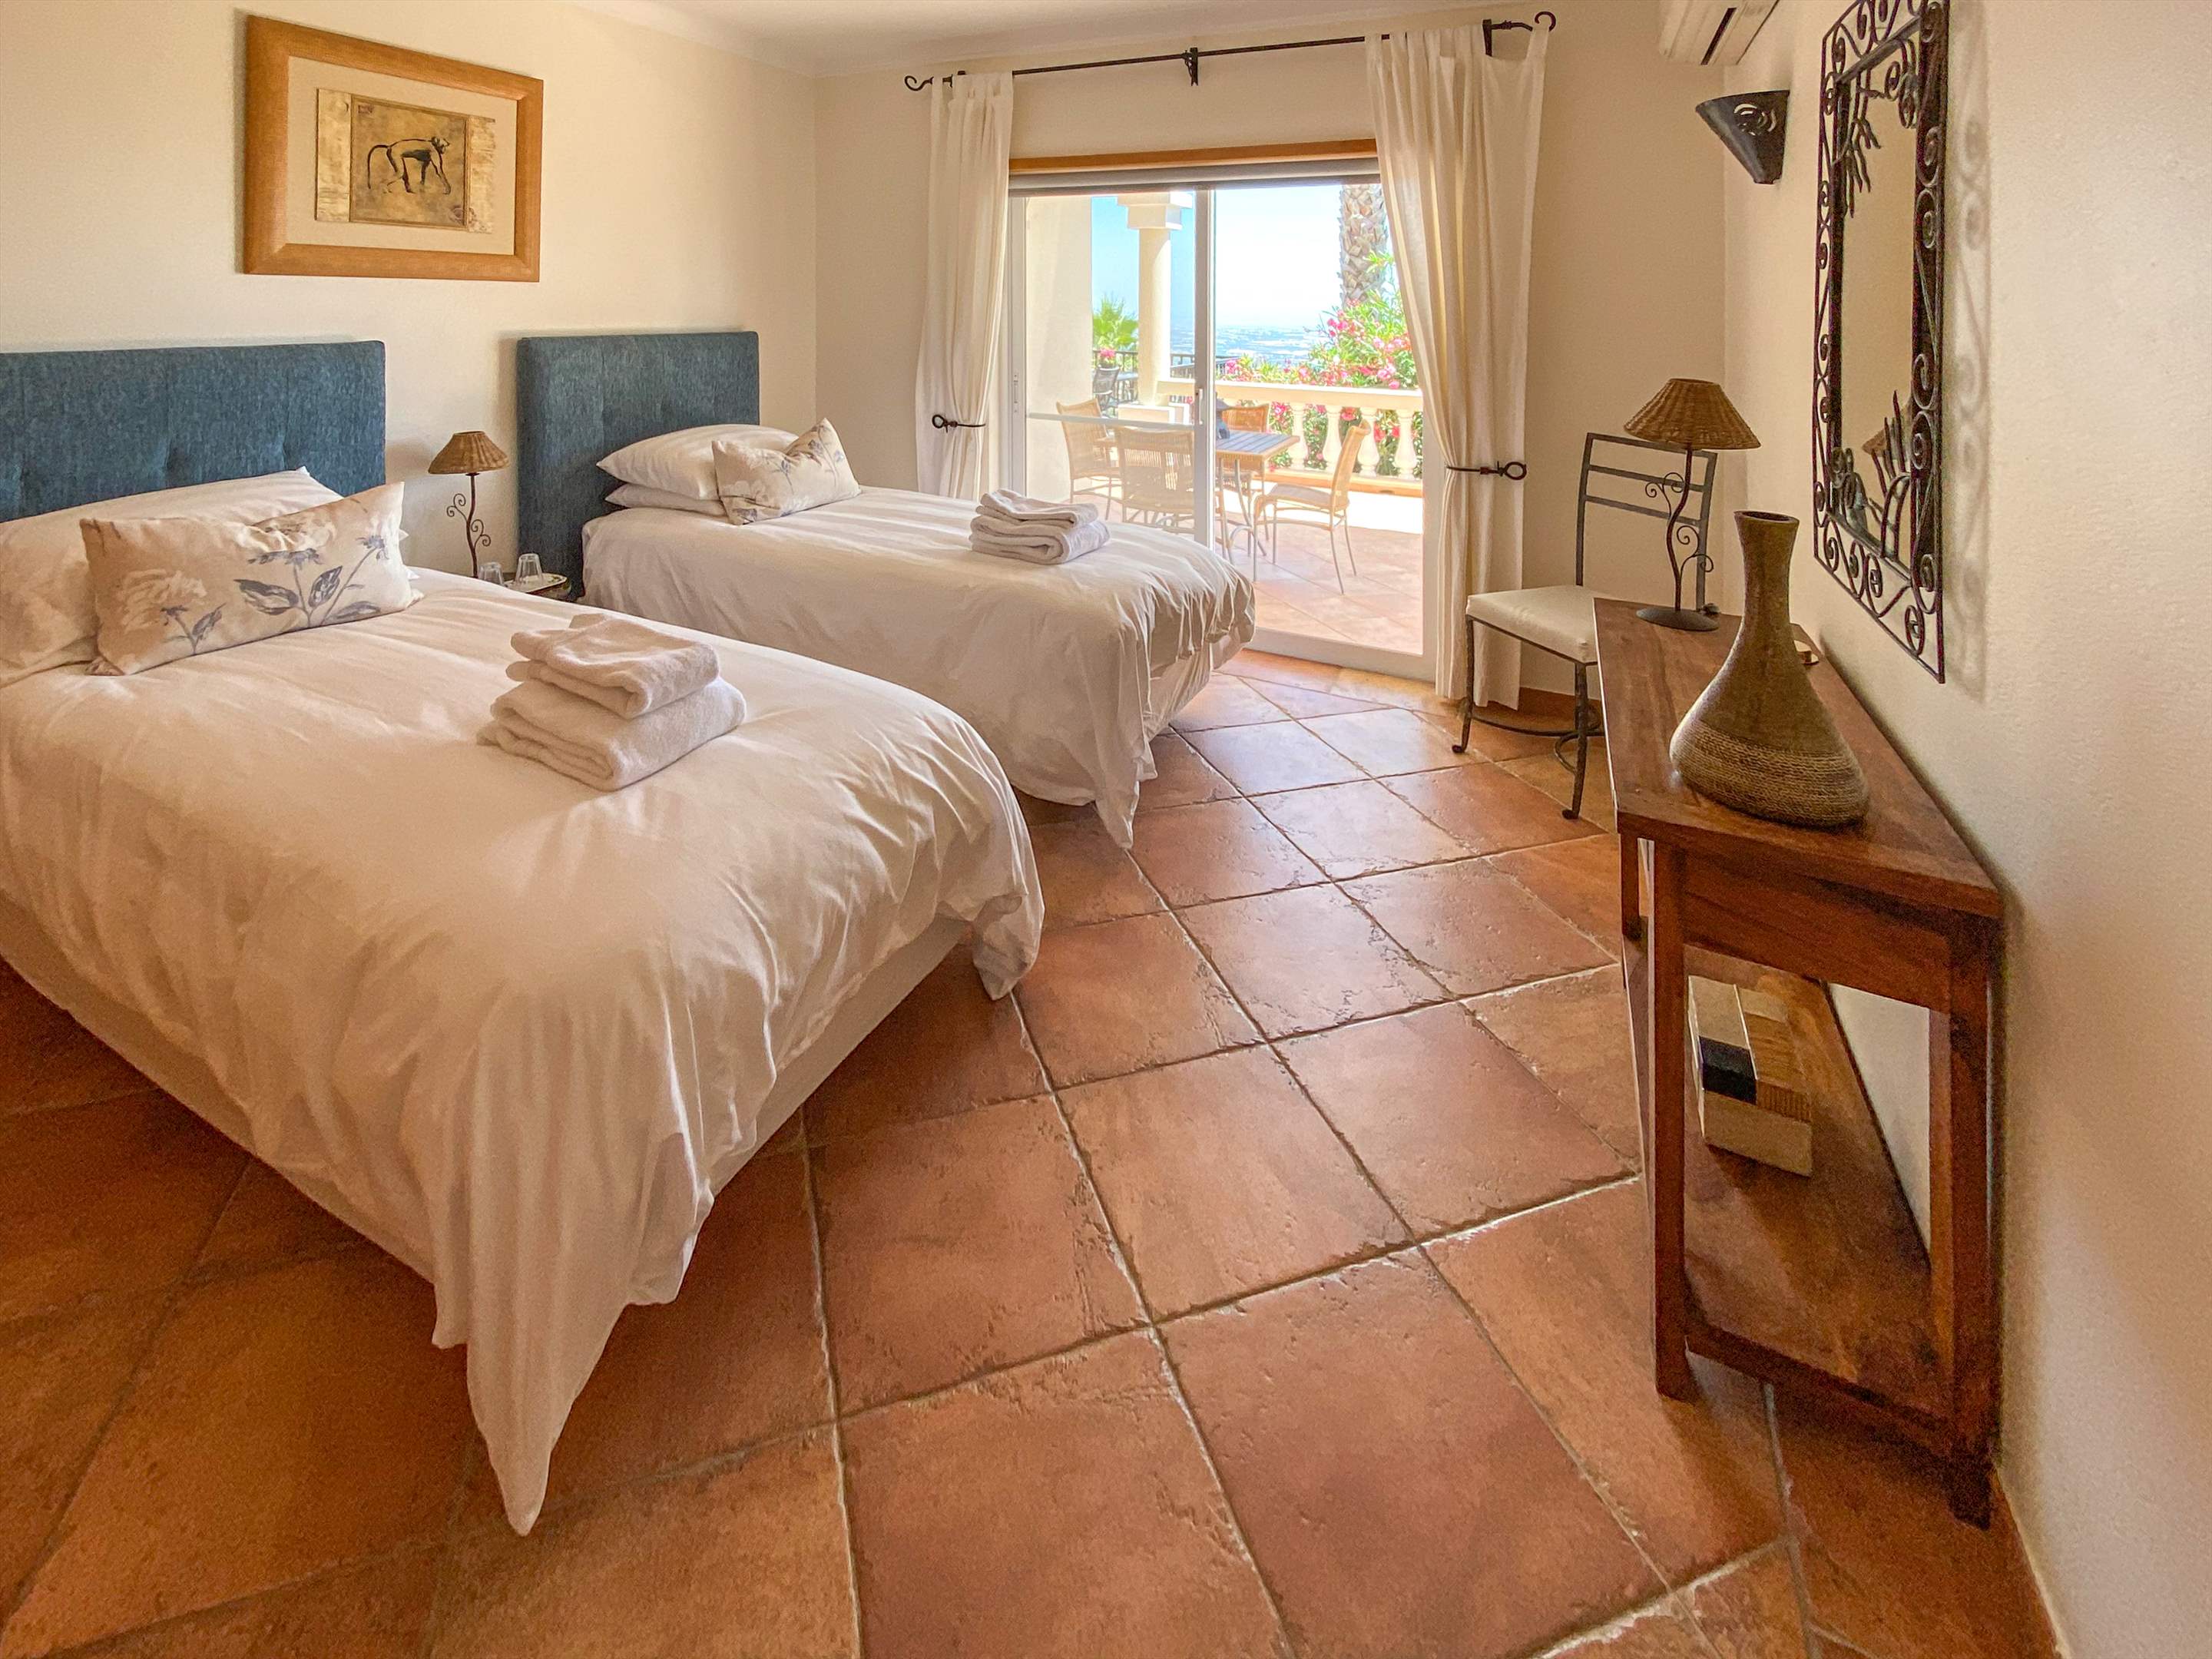 Villa Netuno, 12 Persons Rate, 2 extra persons on sofa bed, 5 bedroom villa in Algarve Countryside, Algarve Photo #27